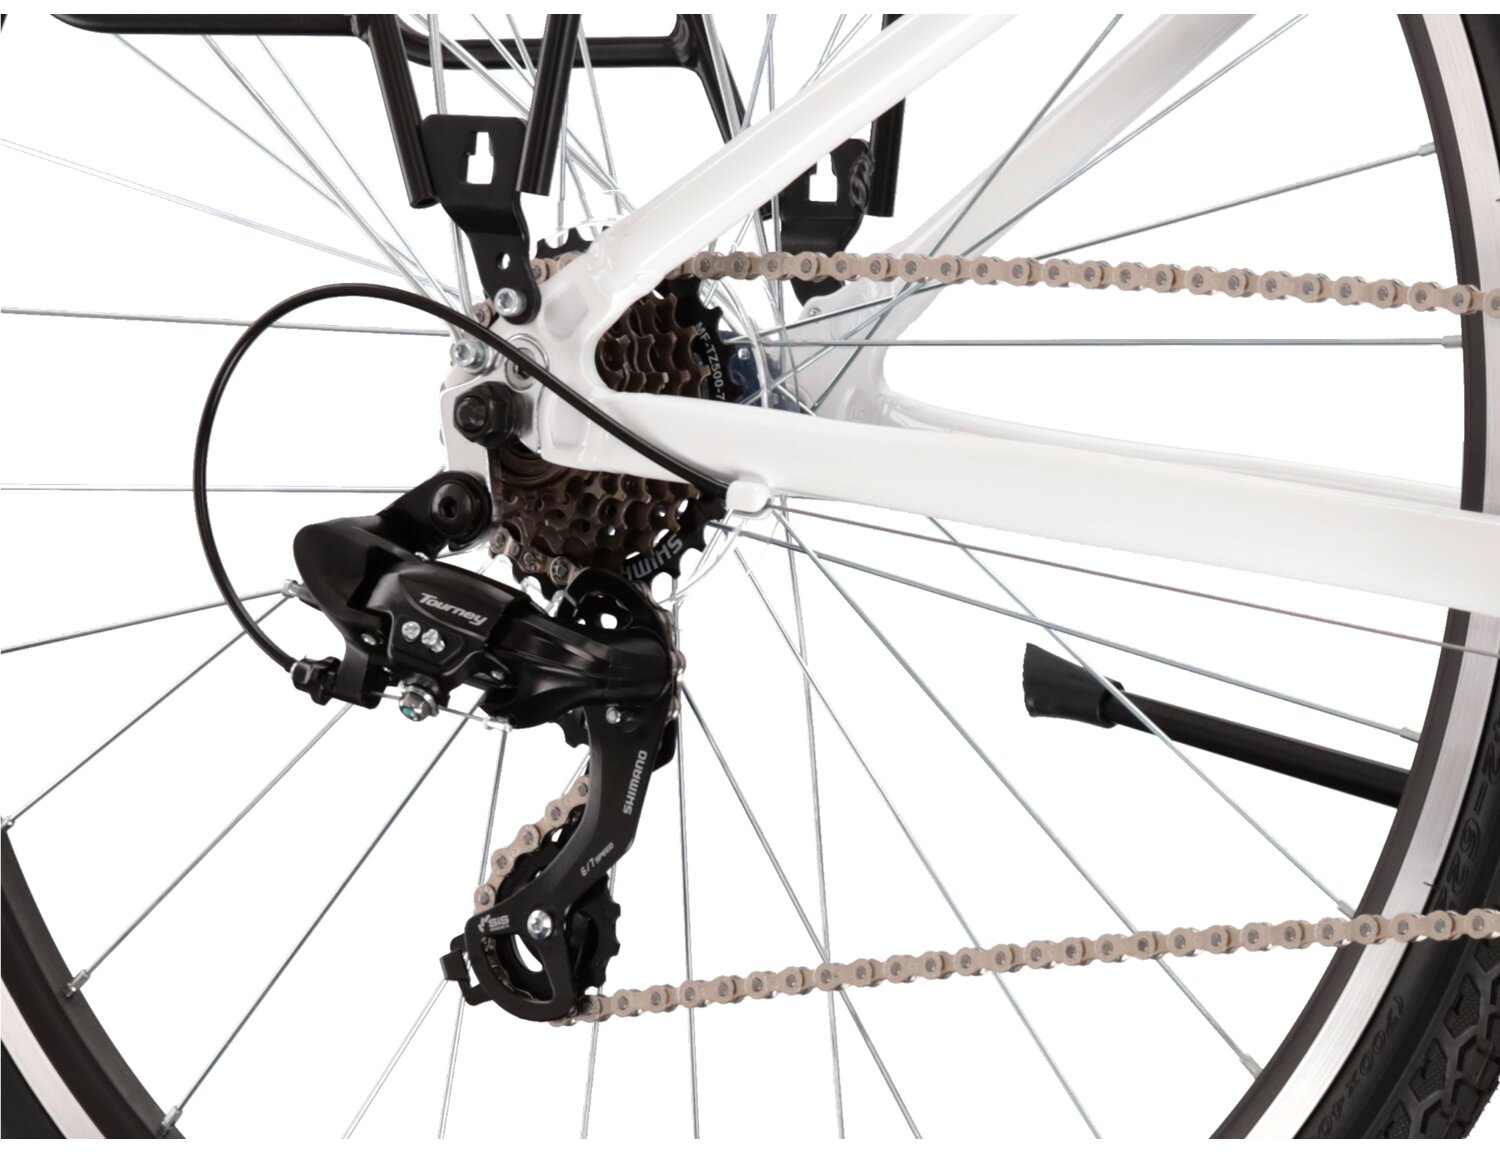  Tylna siedmiobiegowa przerzutka Shimano Tourney TY300 oraz hamulce v-brake w rowerze trekkingowym damskim KROSS Trans 1.0 